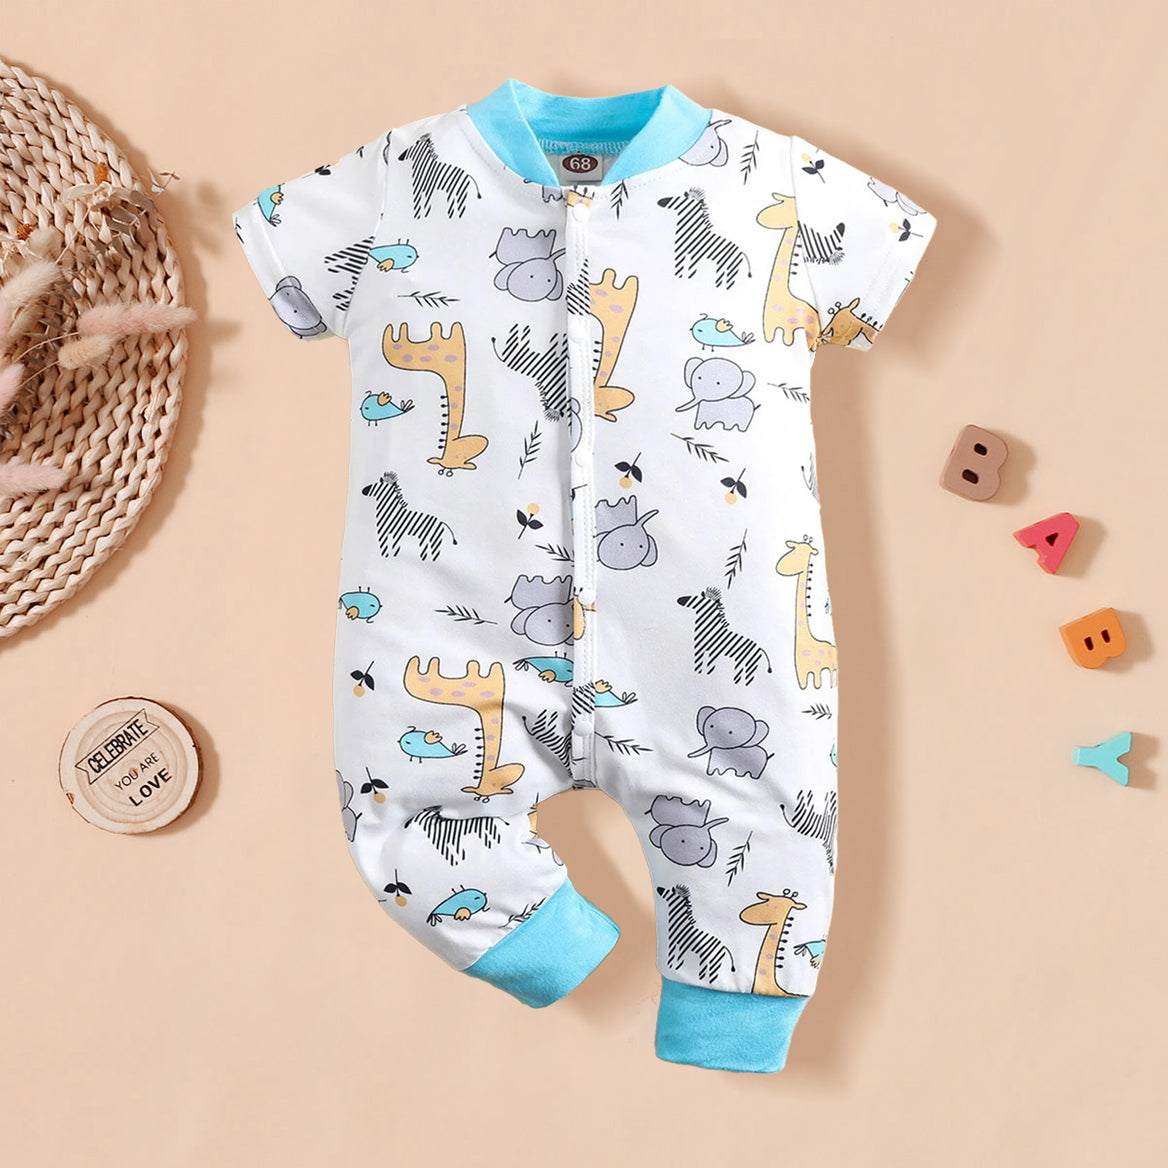 Cute Animal Printed Short Sleeve Baby Jumpsuit